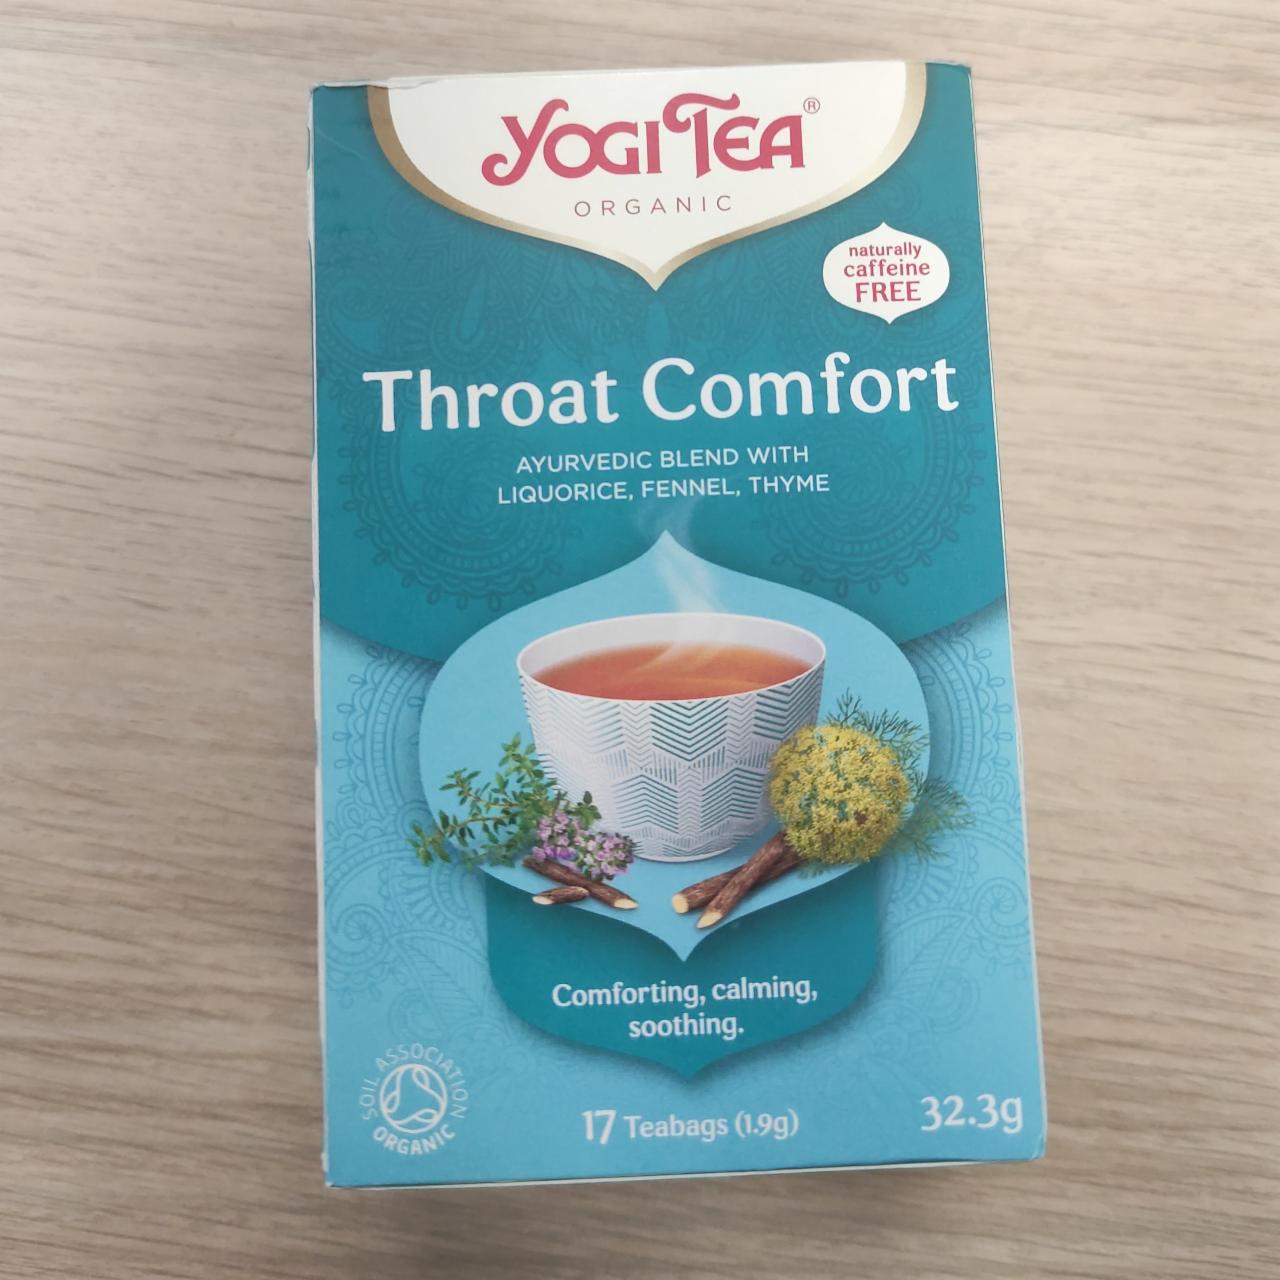 Fotografie - Throat comfort Yogi tea